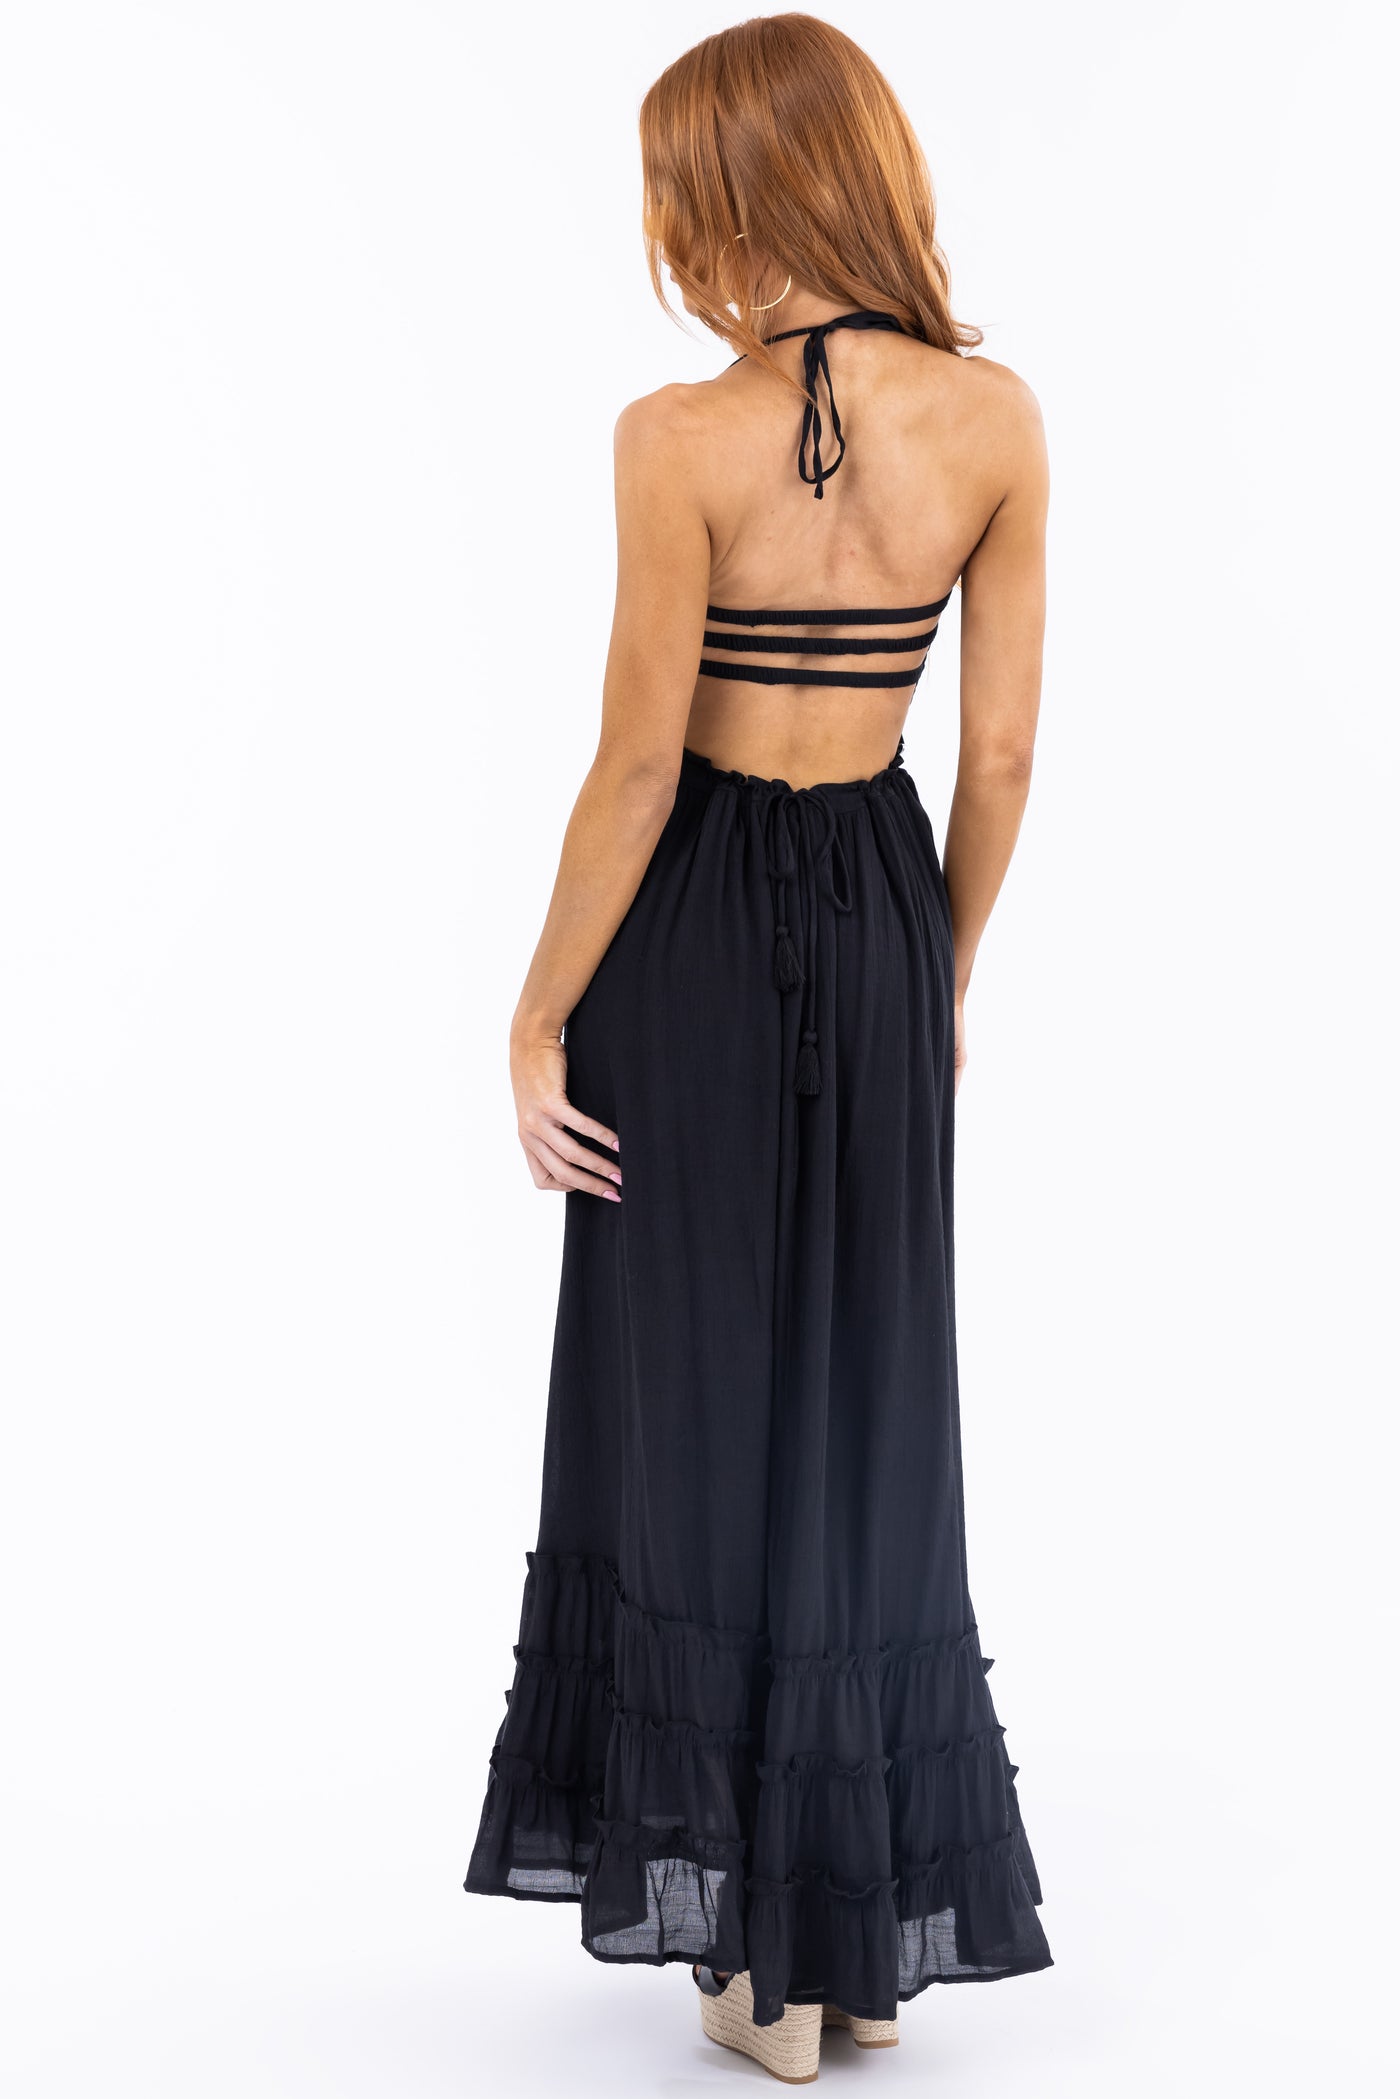 Black Ruffle Bottom Sleeveless Maxi Dress